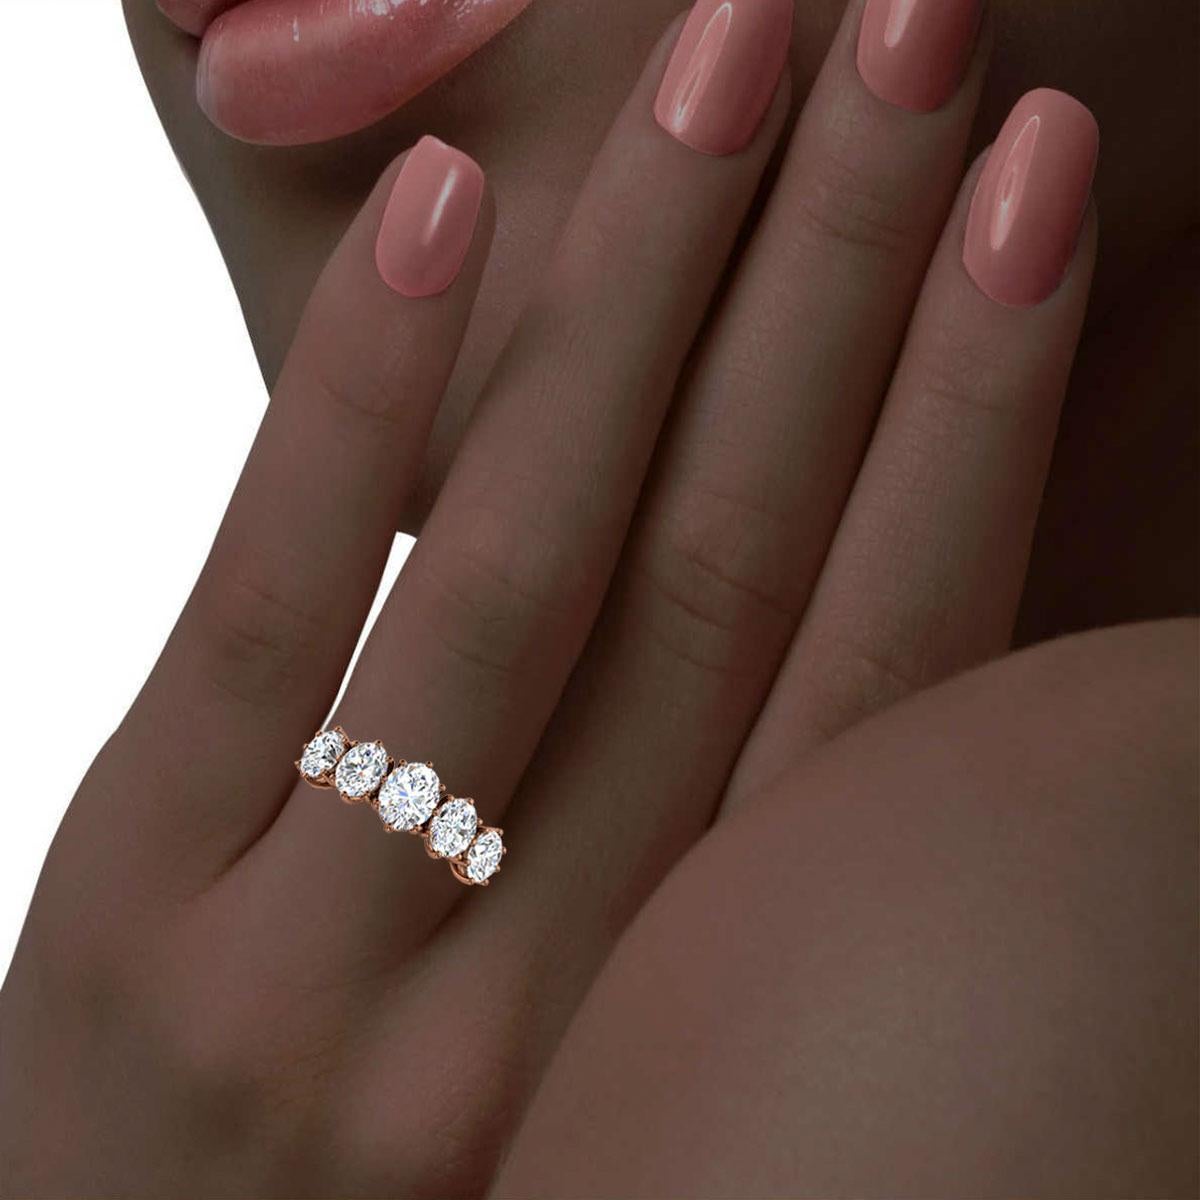 1 1/2 carat oval diamond ring